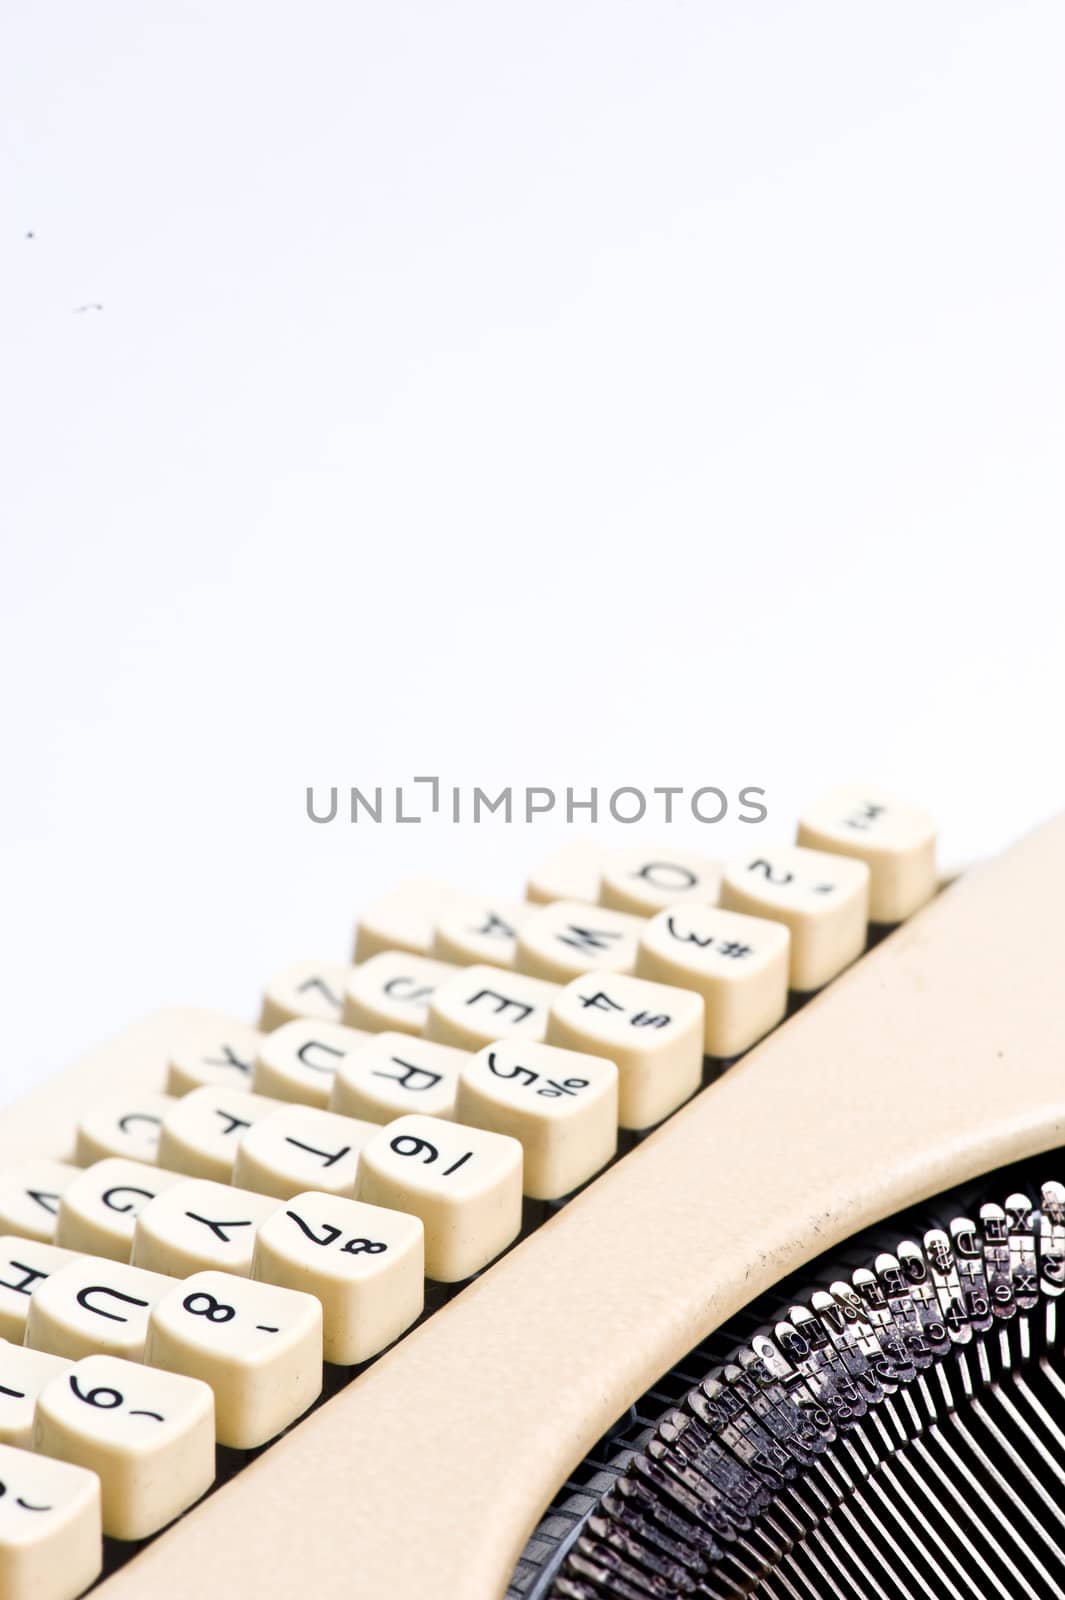 typewriter details by rongreer